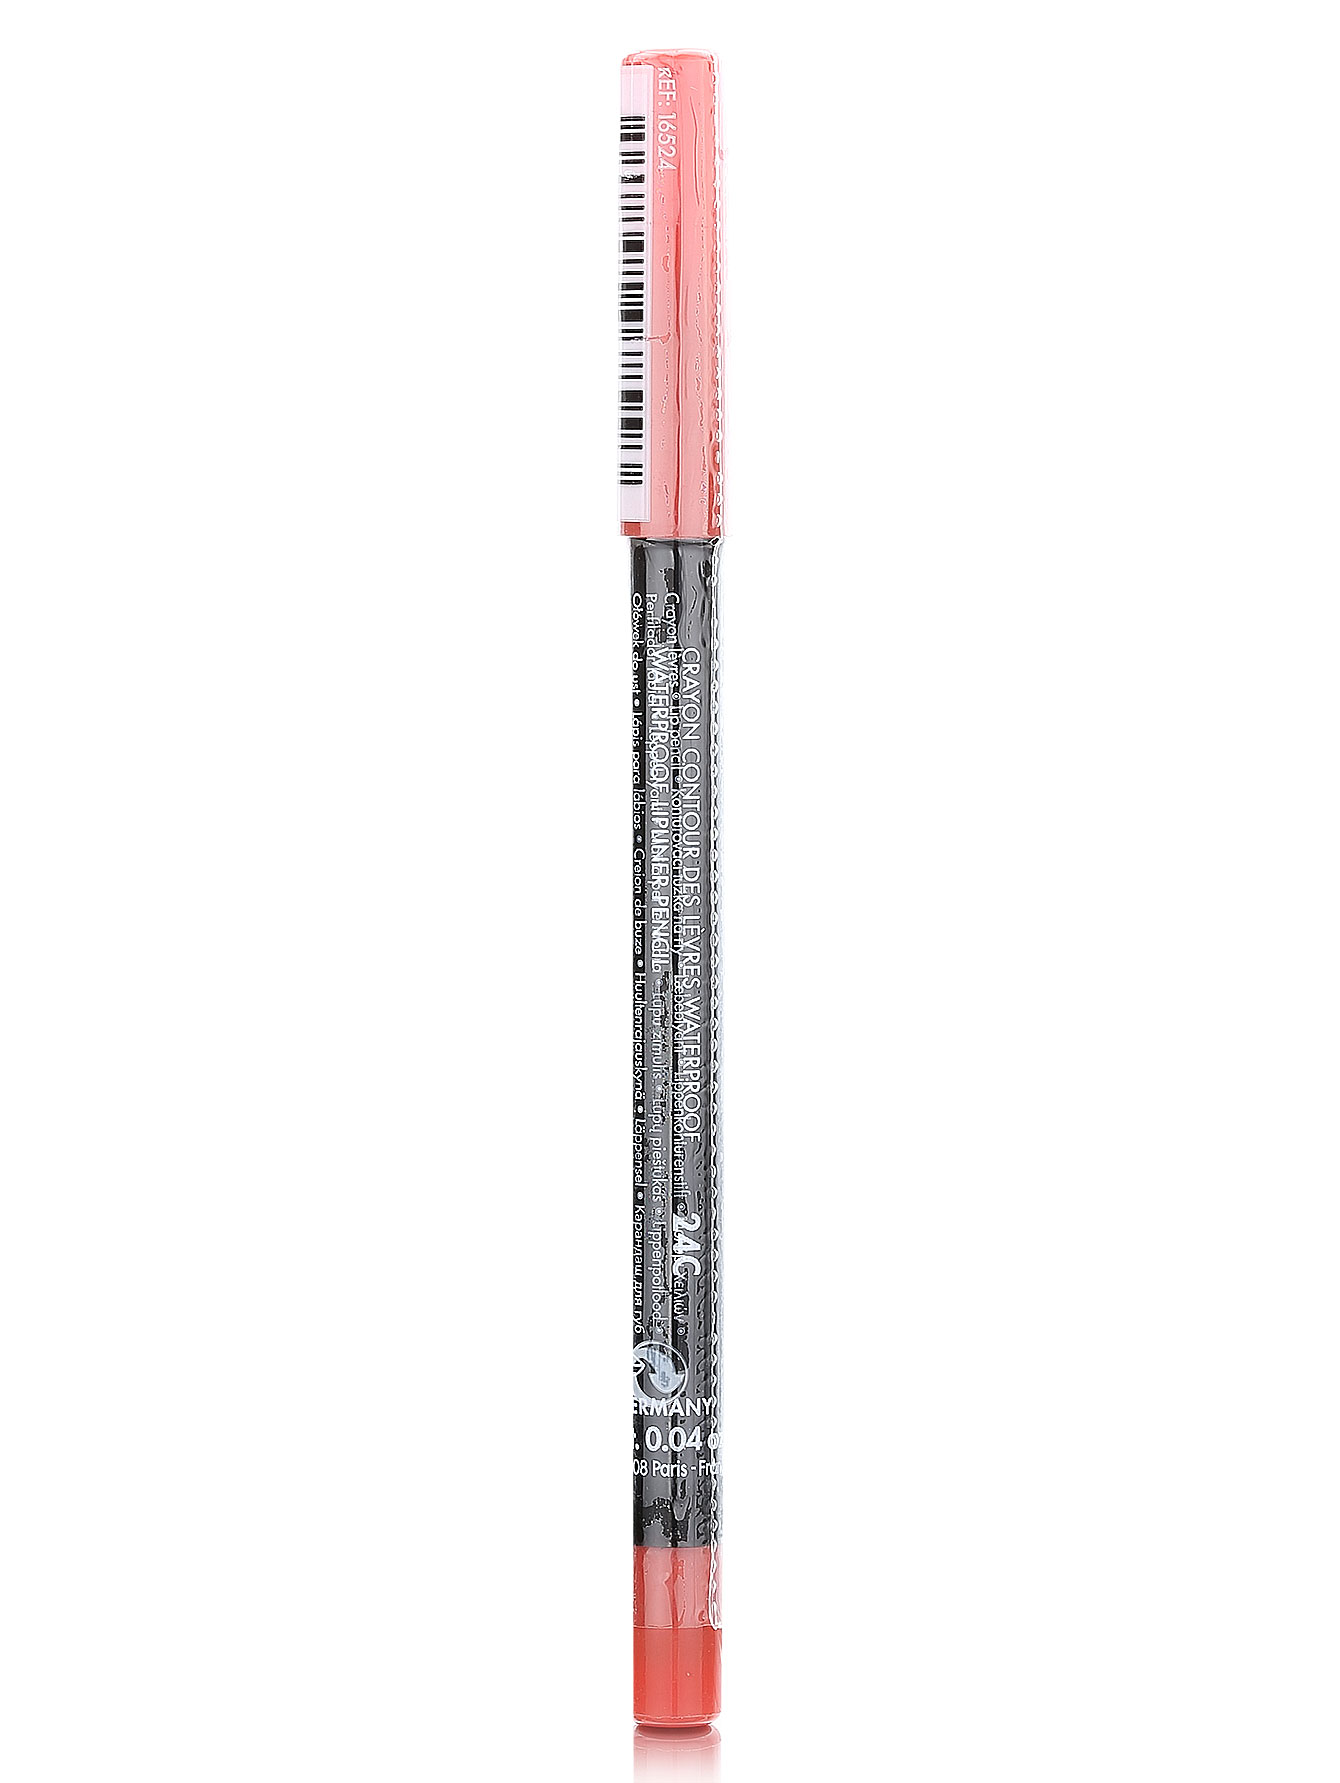  Водостойкий карандаш для губ - №24C корал, Aqua Summer - Модель Верх-Низ